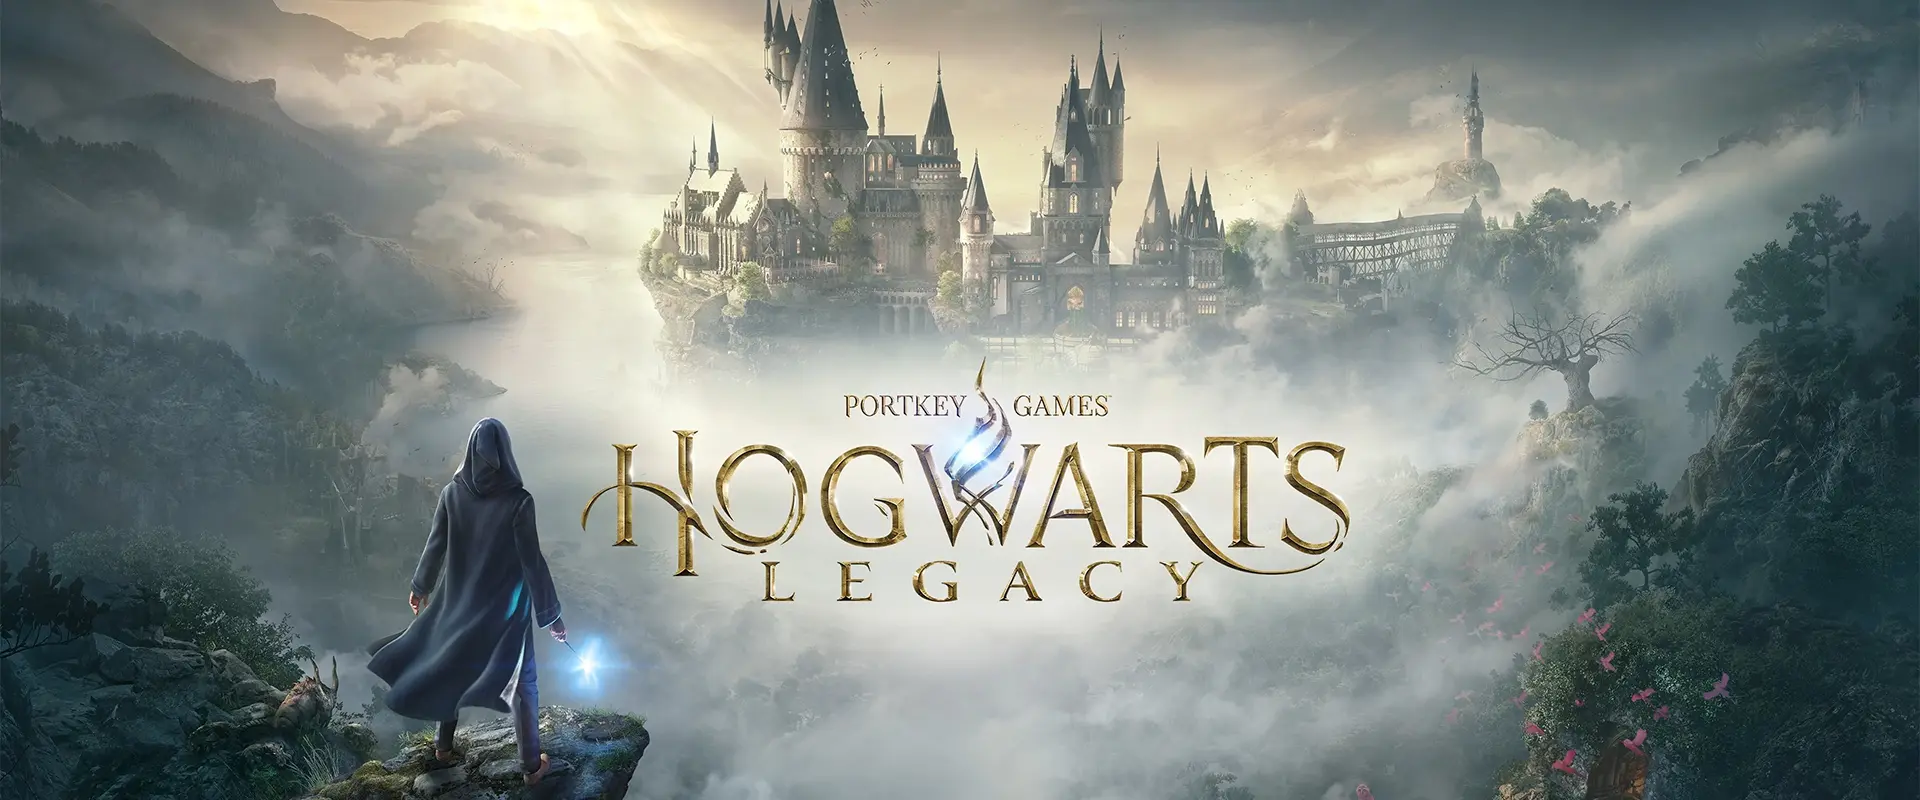 Hogwarts Legacy Ofiicial Background